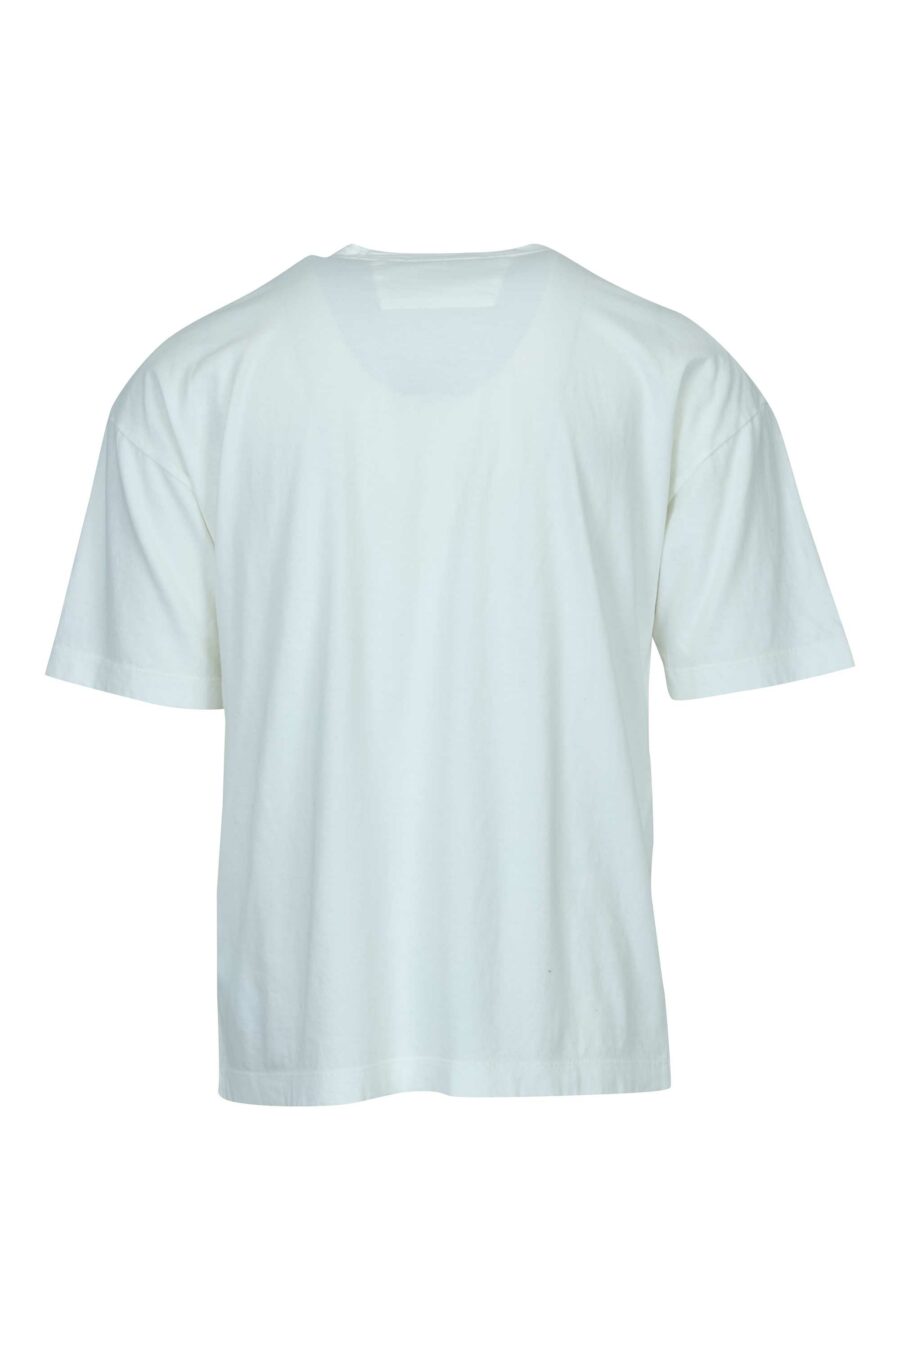 Camiseta blanca "oversize" con minilogo "cp 989" - 7620943818840 1